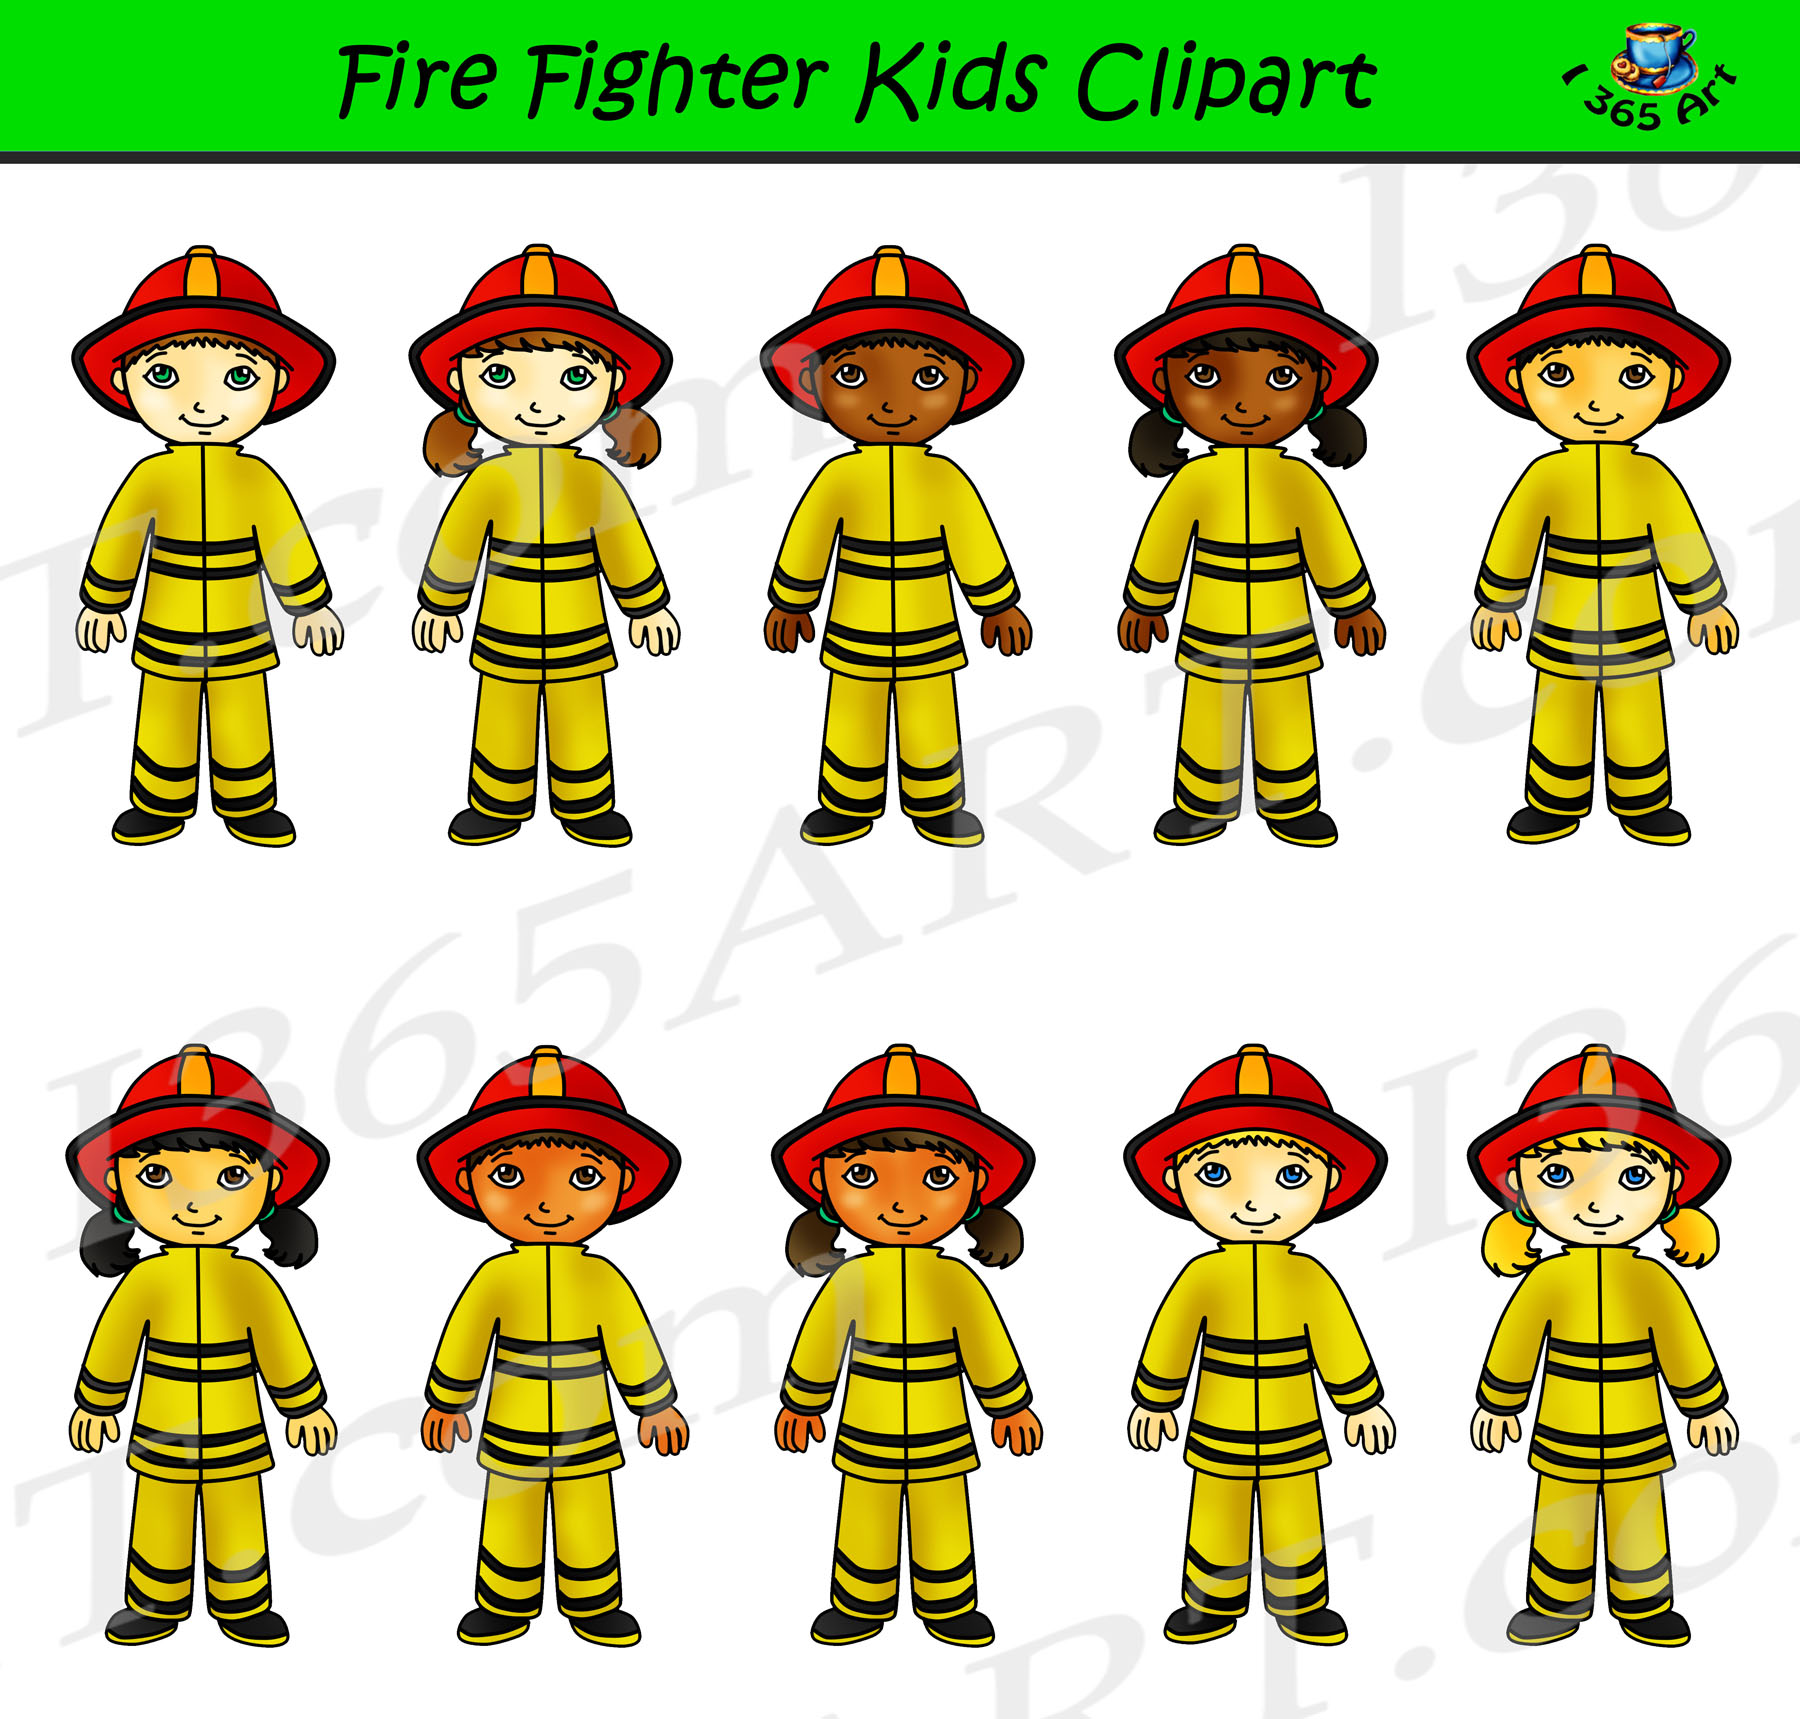 Firefighter clipart kids.